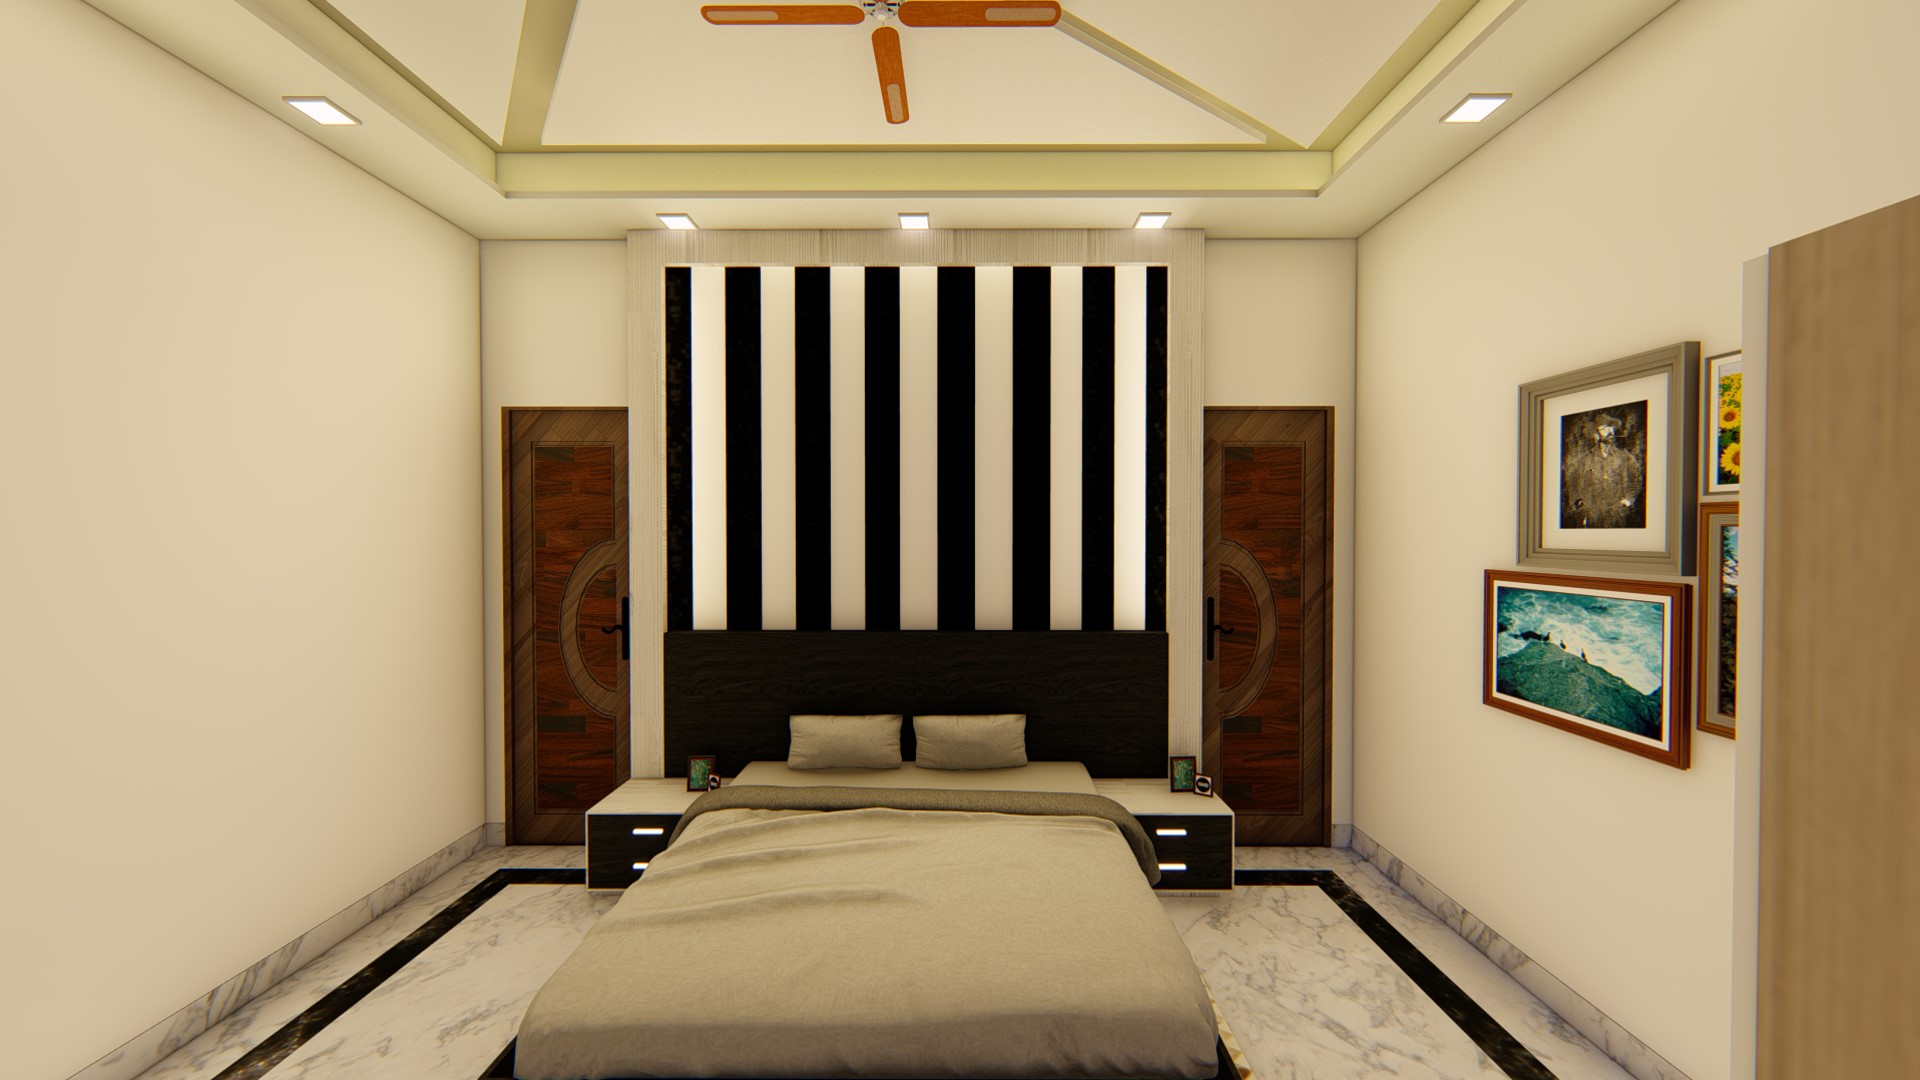 Bedroom Design With Headboard